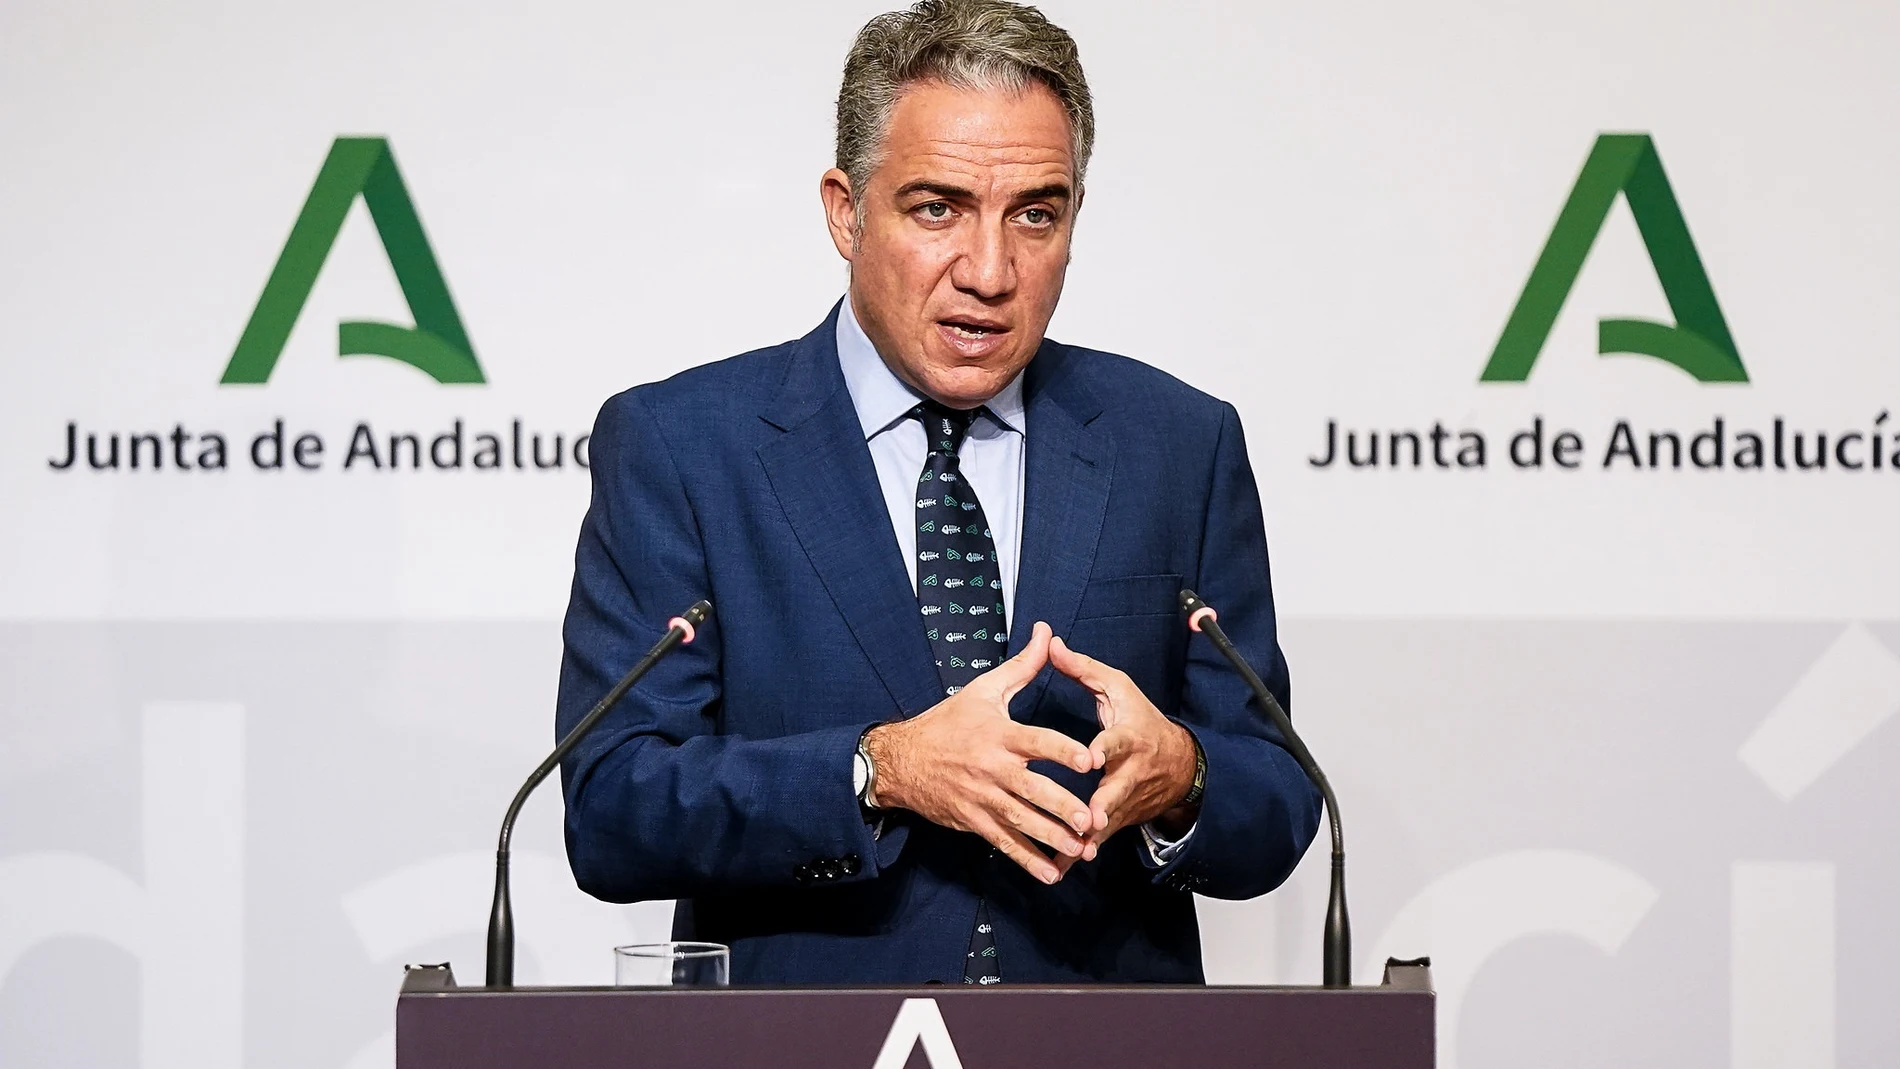 El consejero de Presidencia de la Junta de Andalucía, y portavoz, Elías Bendodo. EFE/JUNTA DE ANDALUCÍA